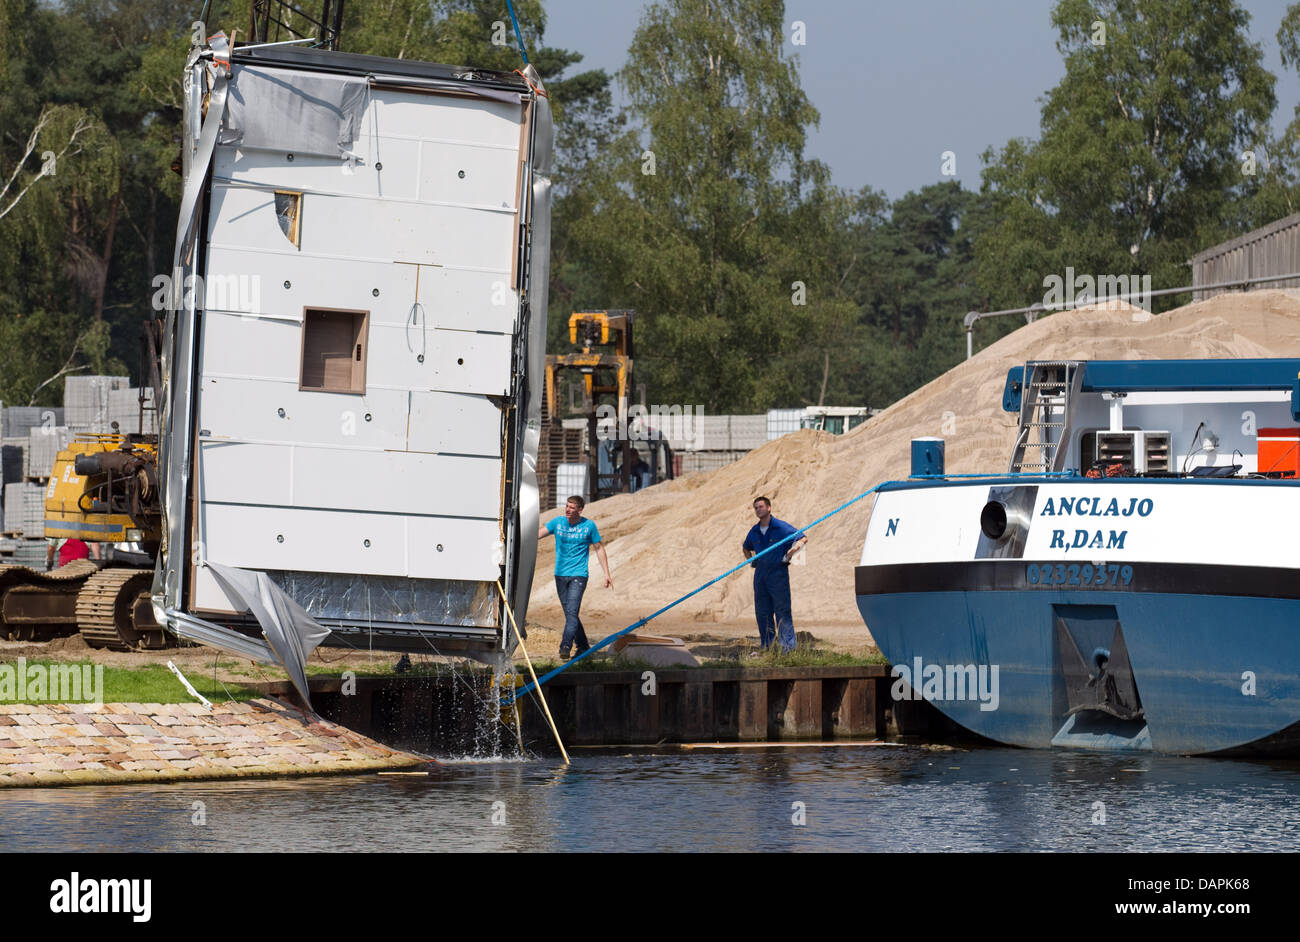 Der Cut-off-Fahrerhaus ein Tankschiff ist aus dem Wasser des Dortmund-Ems-Kanal in der Nähe von Lingen, Deutschland, 25 august 2011 gezogen. Das Schiff kollidierte mit einer Brücke. Ein Schaden von rund 100.000 Euro. Foto: FRISO GENTSCH Stockfoto